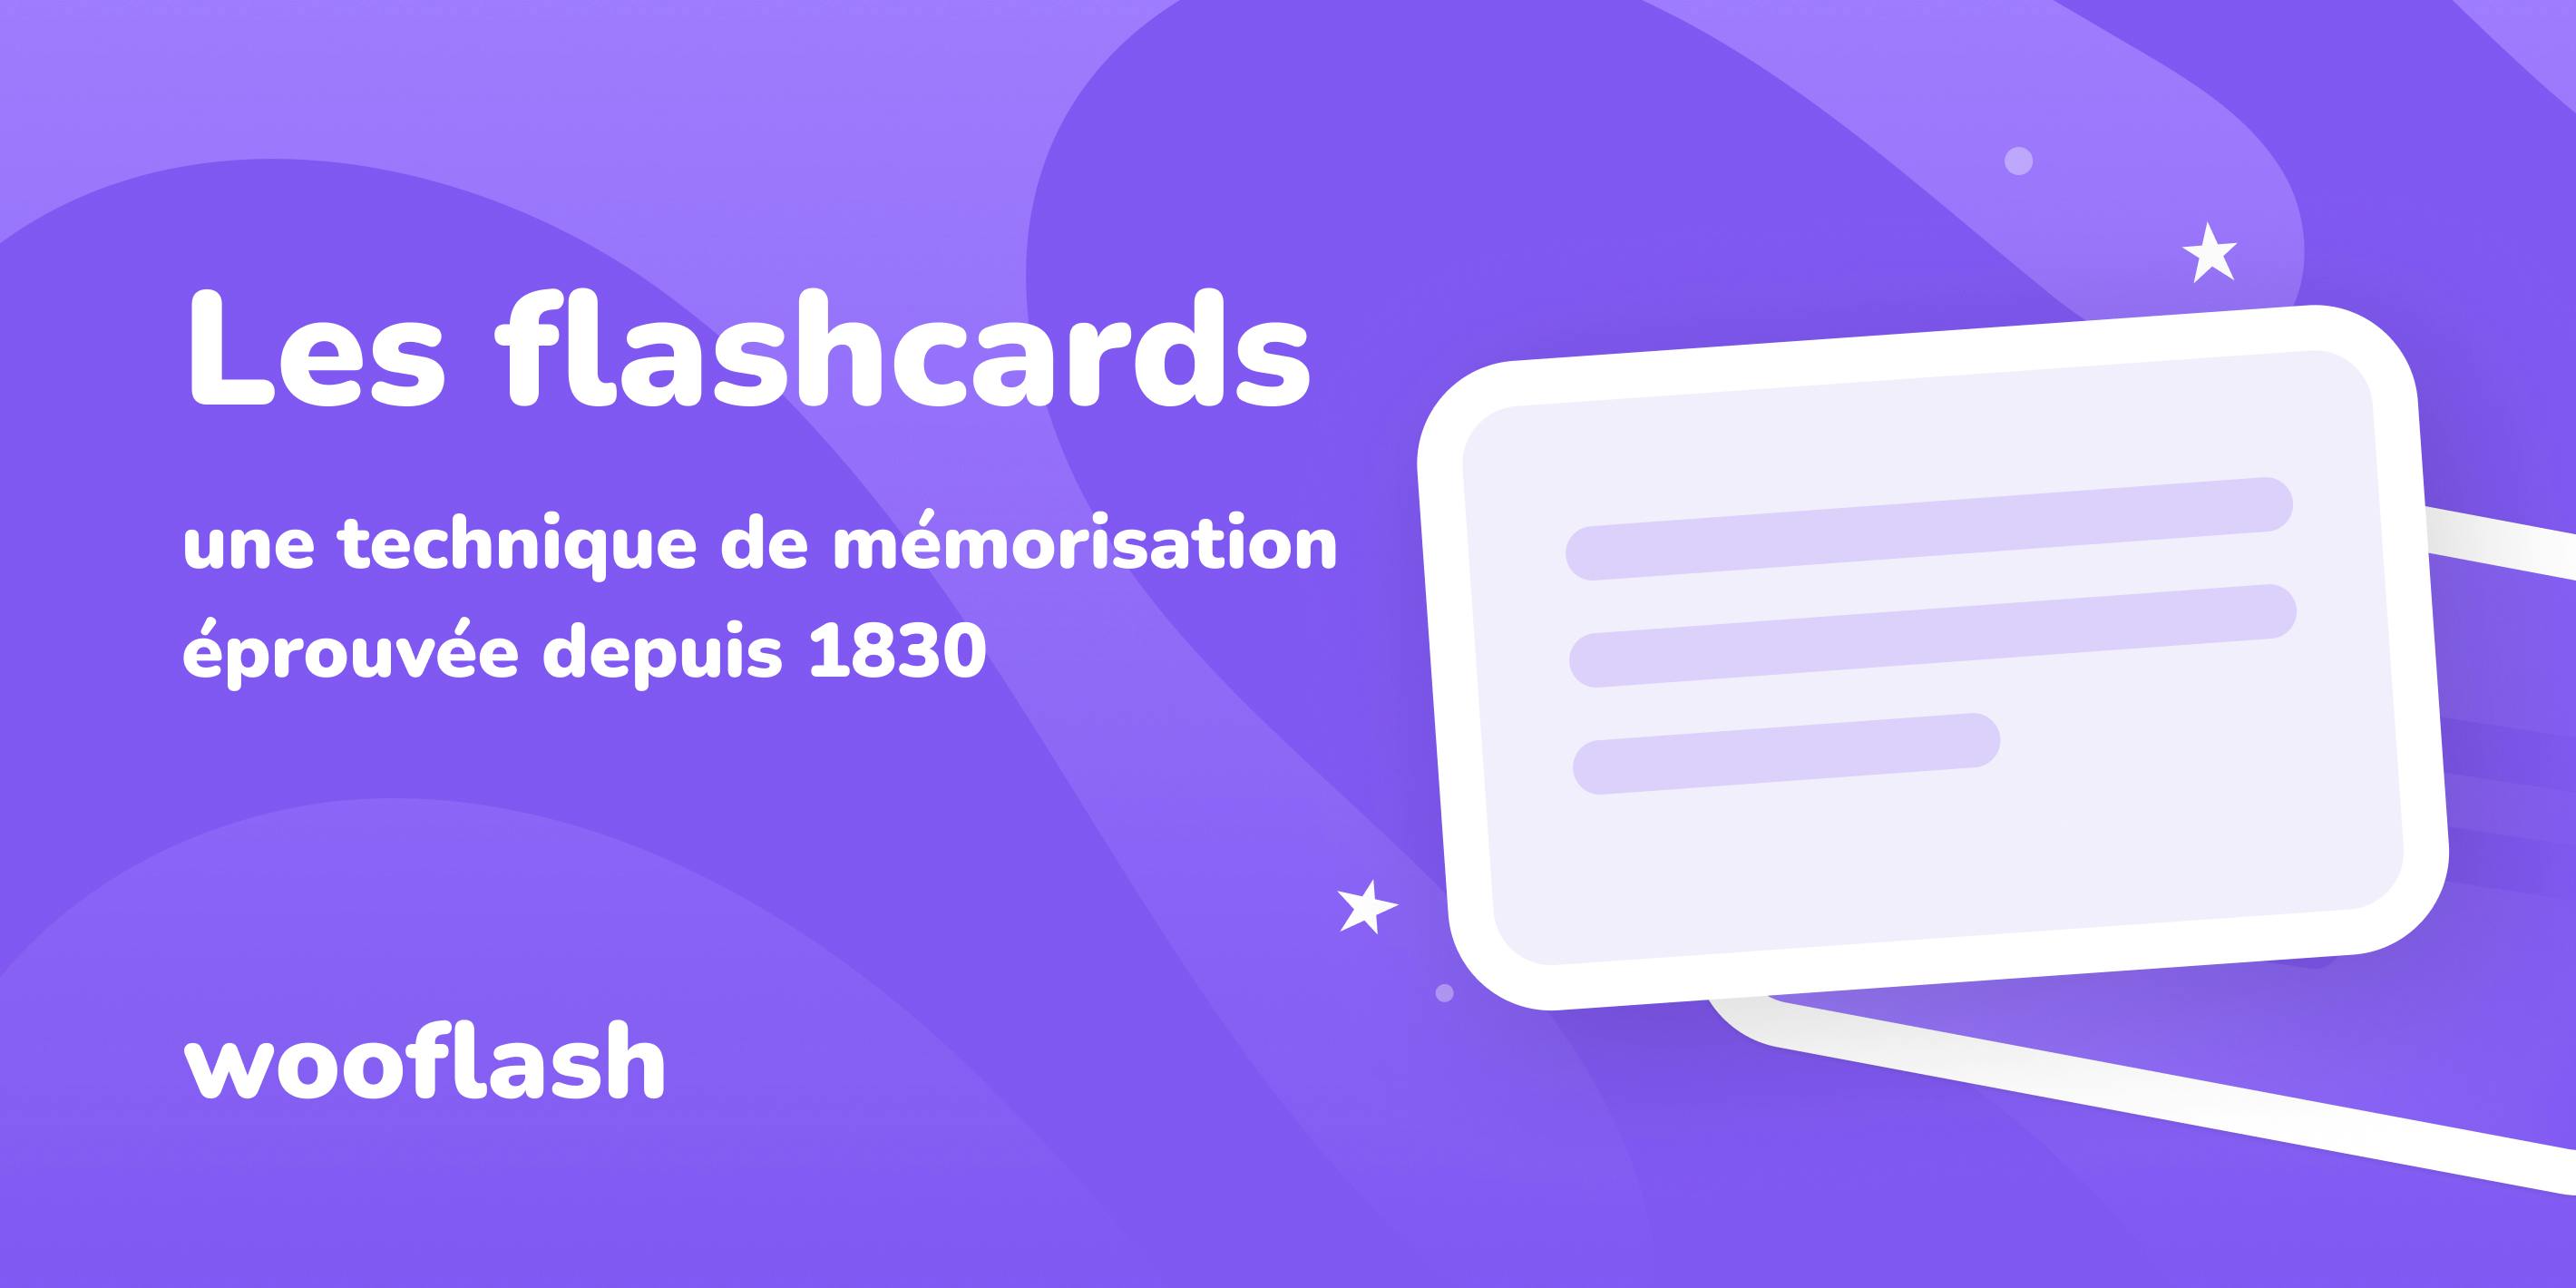 Les flashcards : une technique de mémorisation 